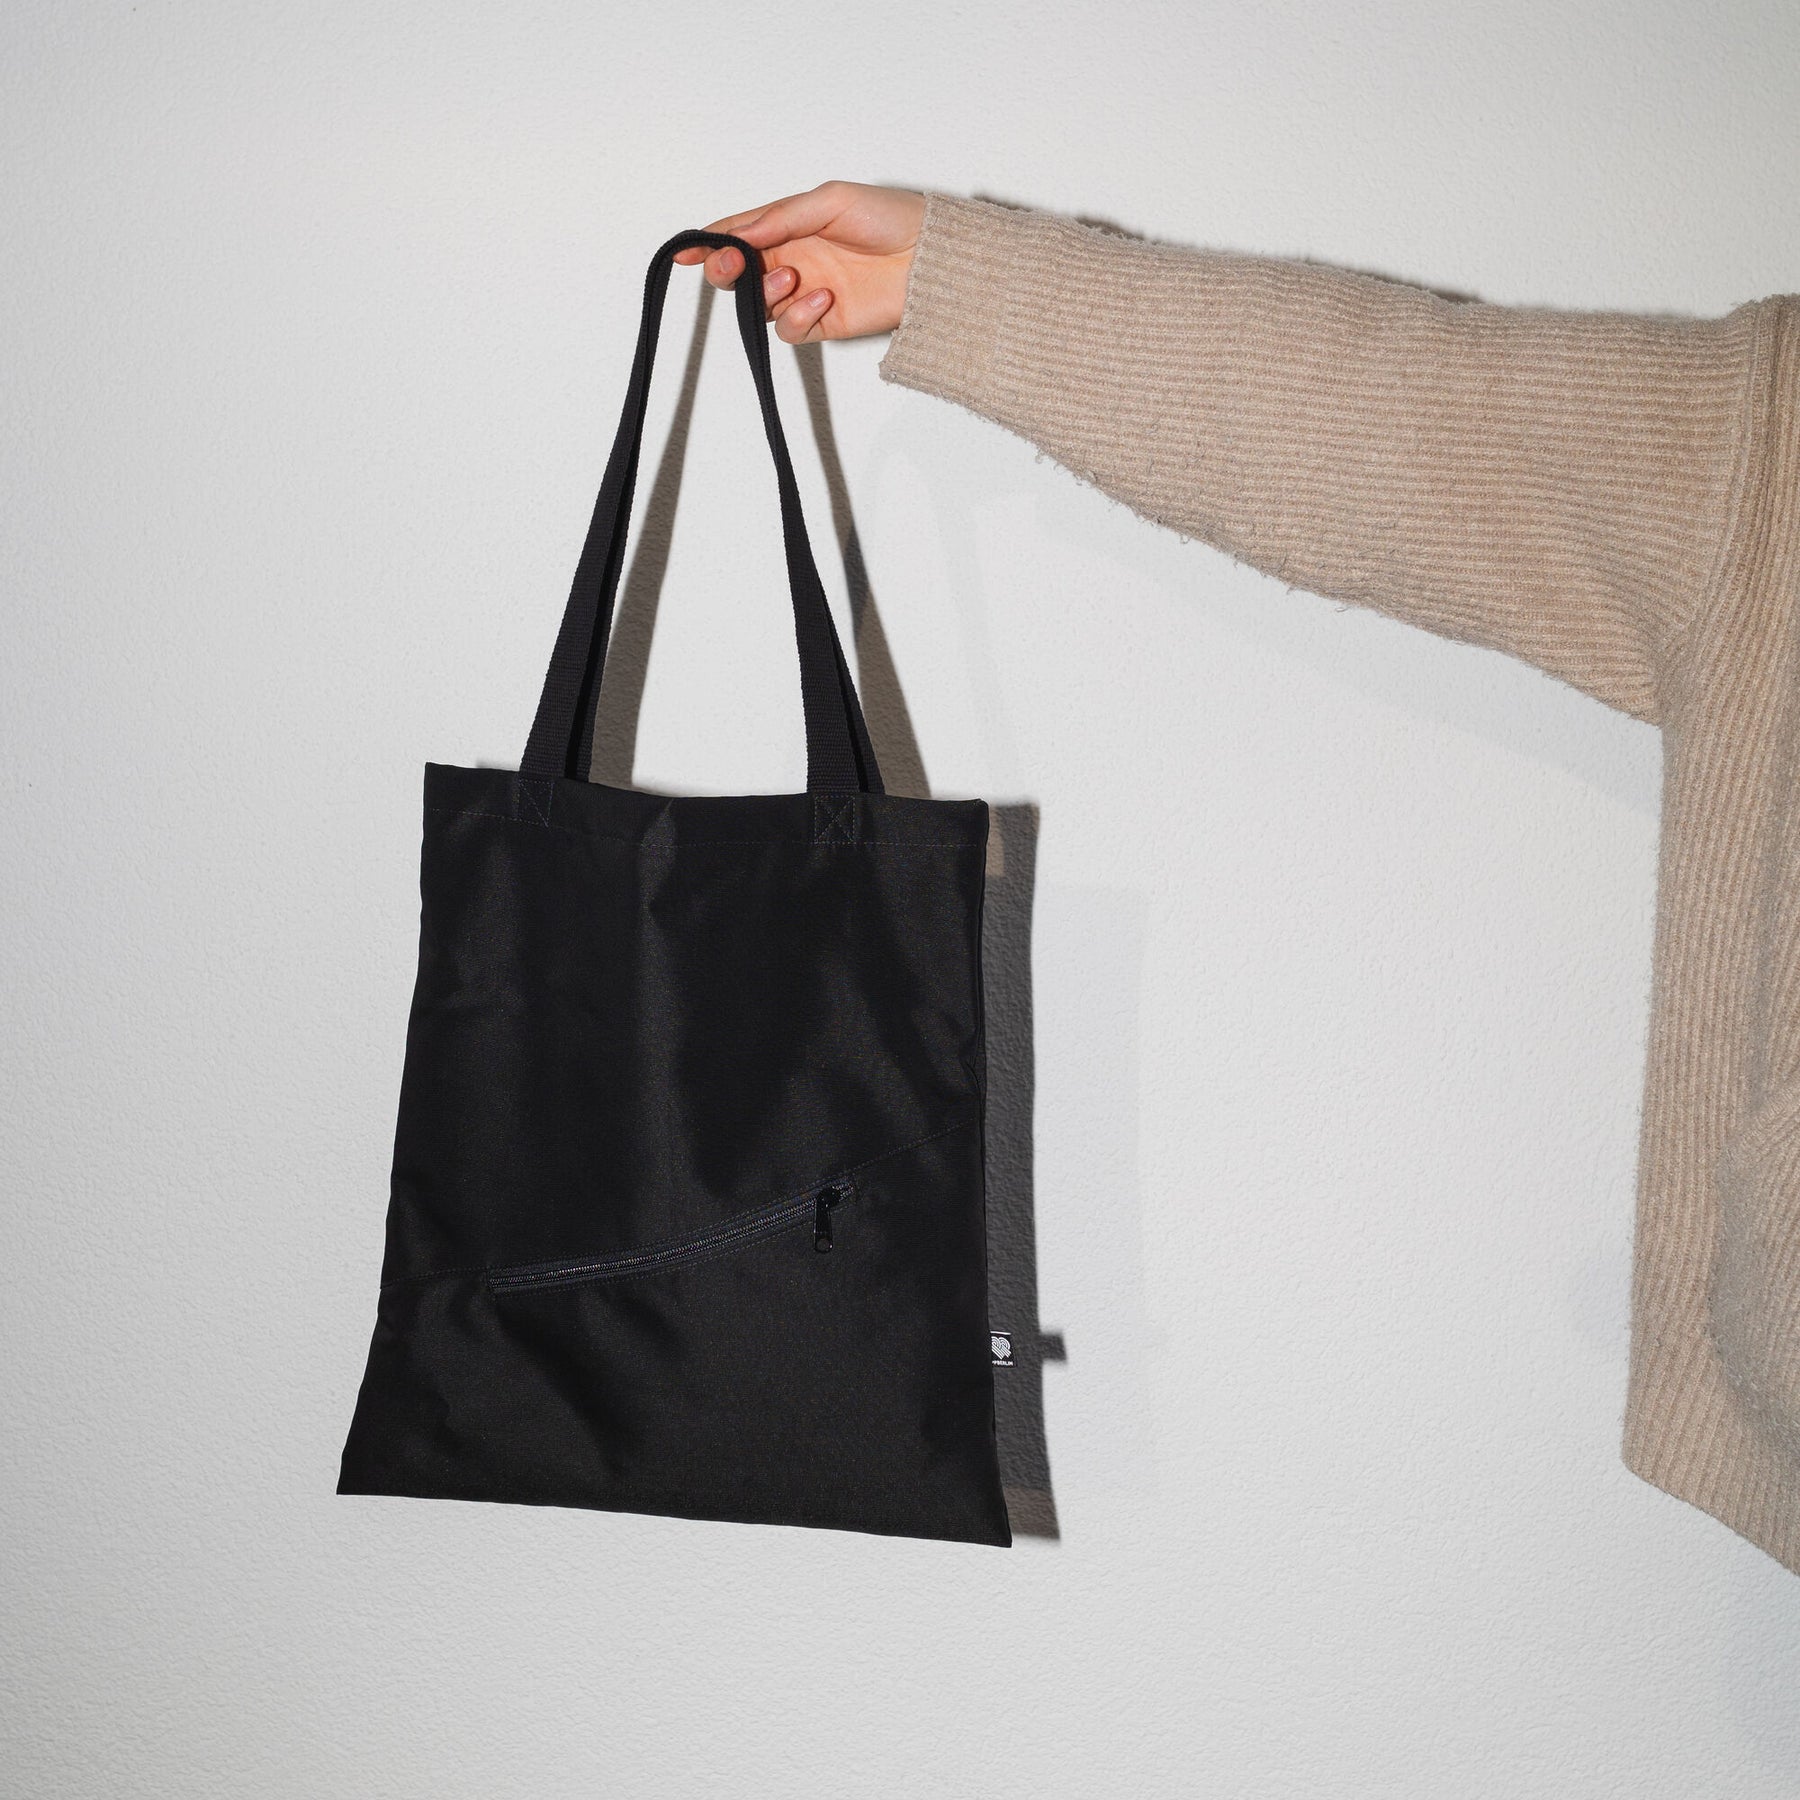 Shopper Bag, Meeresplastik